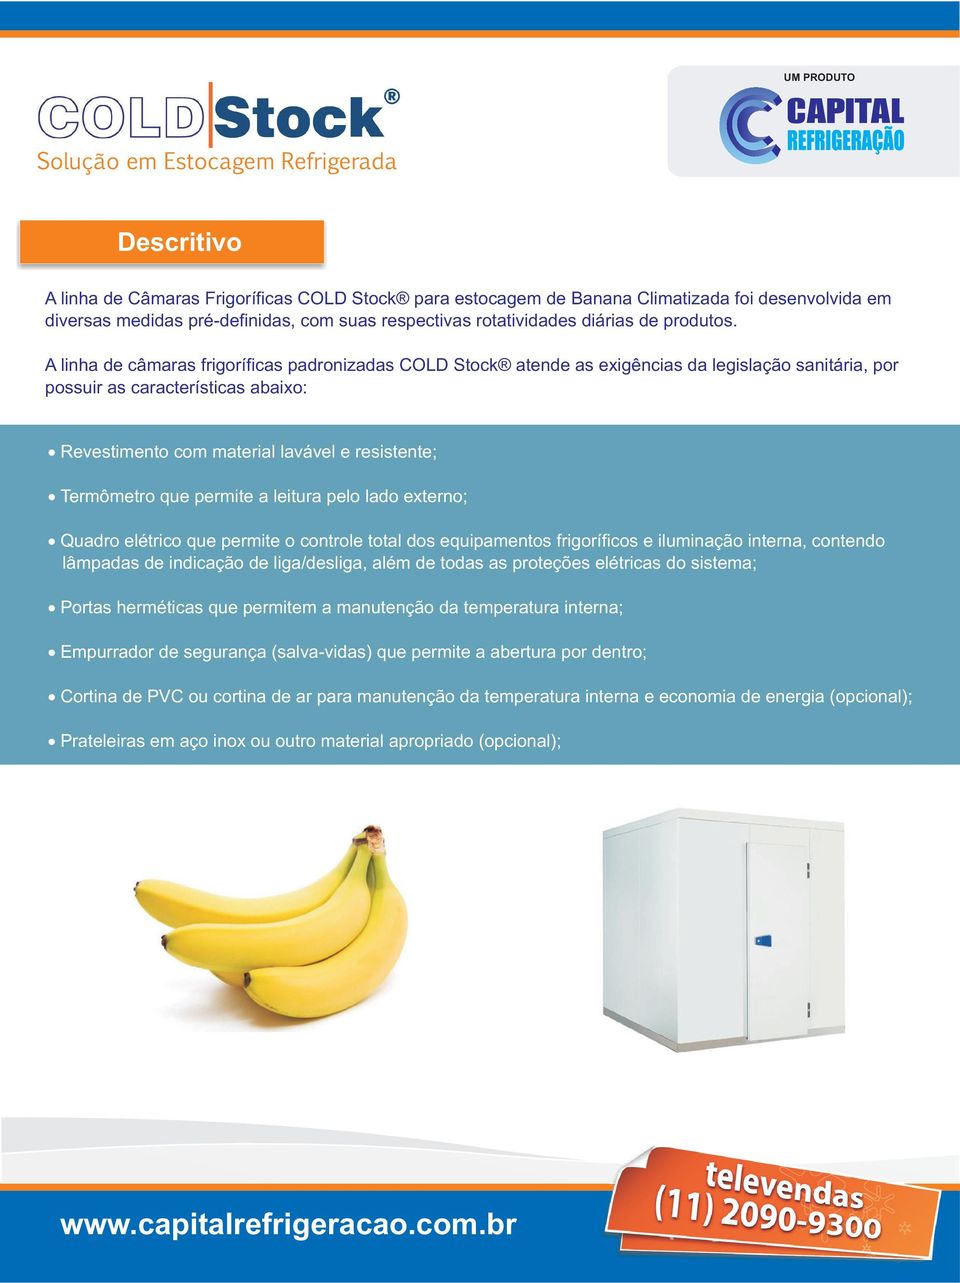 A linha de câmaras frigoríficas padronizadas COLD Stock atende as exigências da legislação sanitária, por possuir as características abaixo: Revestimento com material lavável e resistente; Termômetro